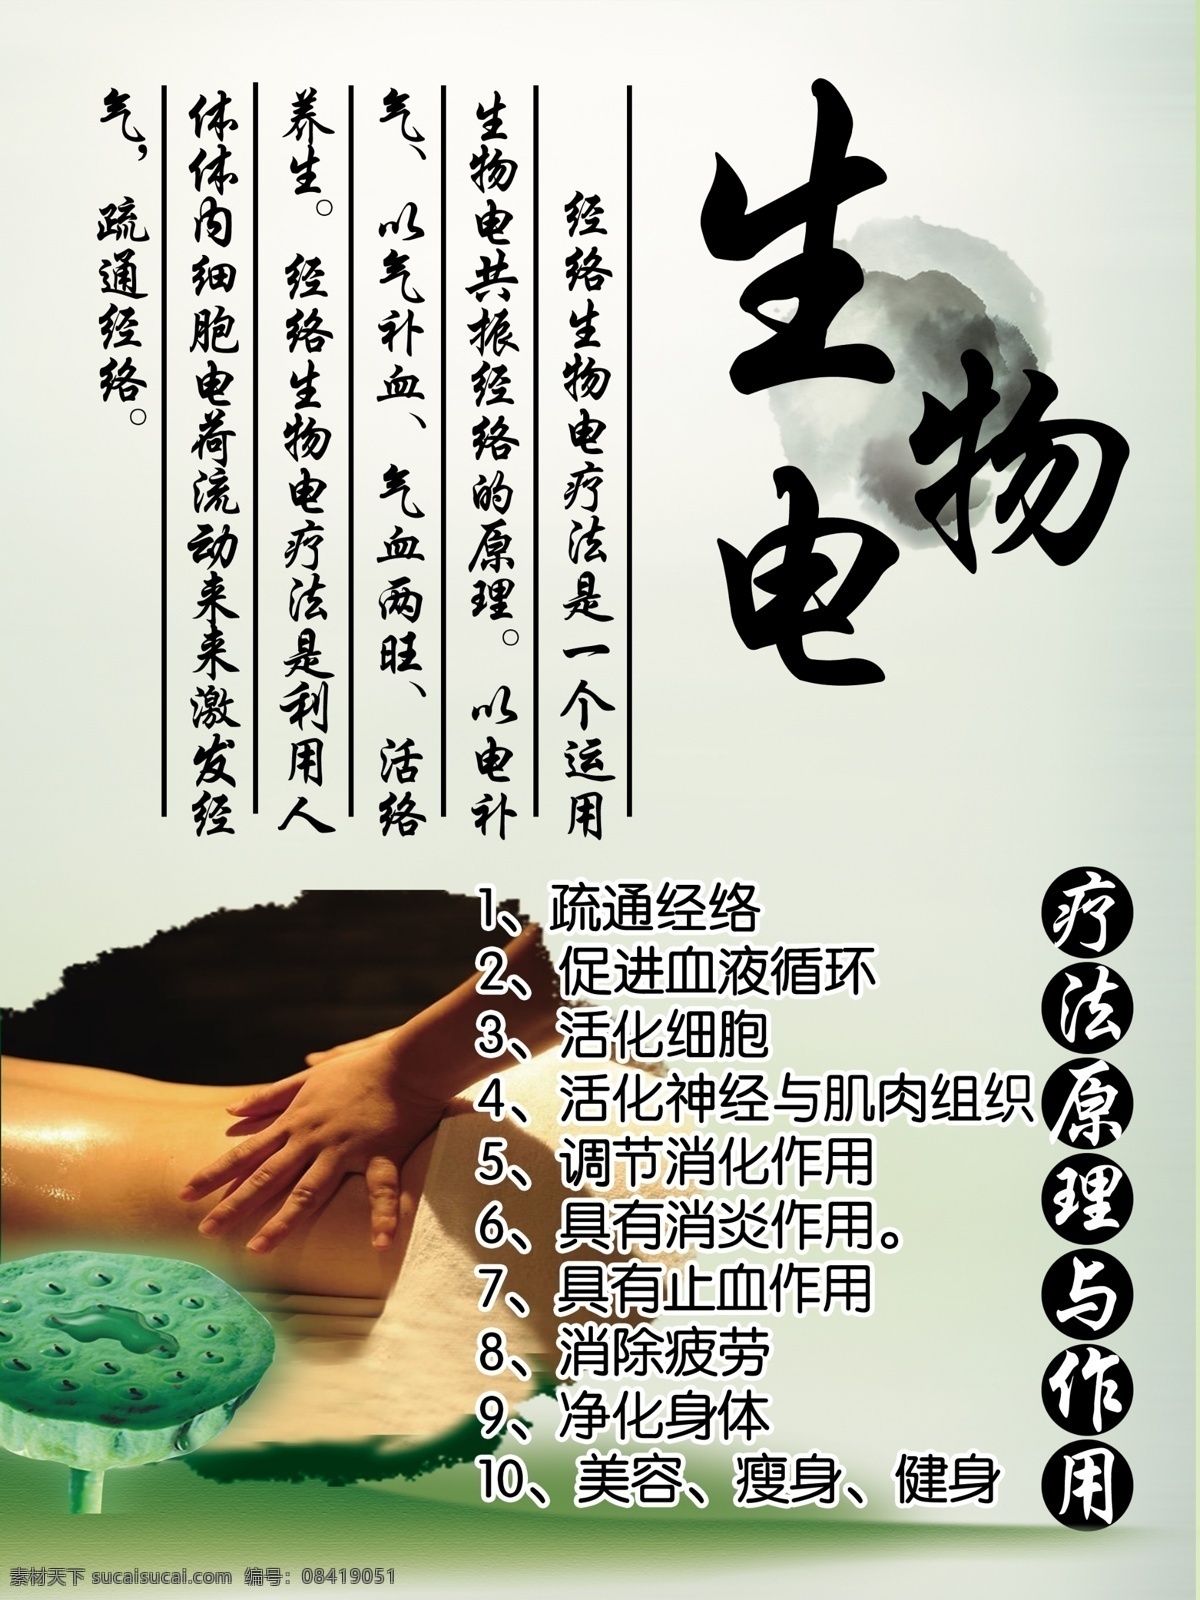 生物电展板 生物电 疗法原理与 作用图片 按摩 中国风 疗法与作用 展板 宣传单 绿色 藕 莲子 背部 背部按摩